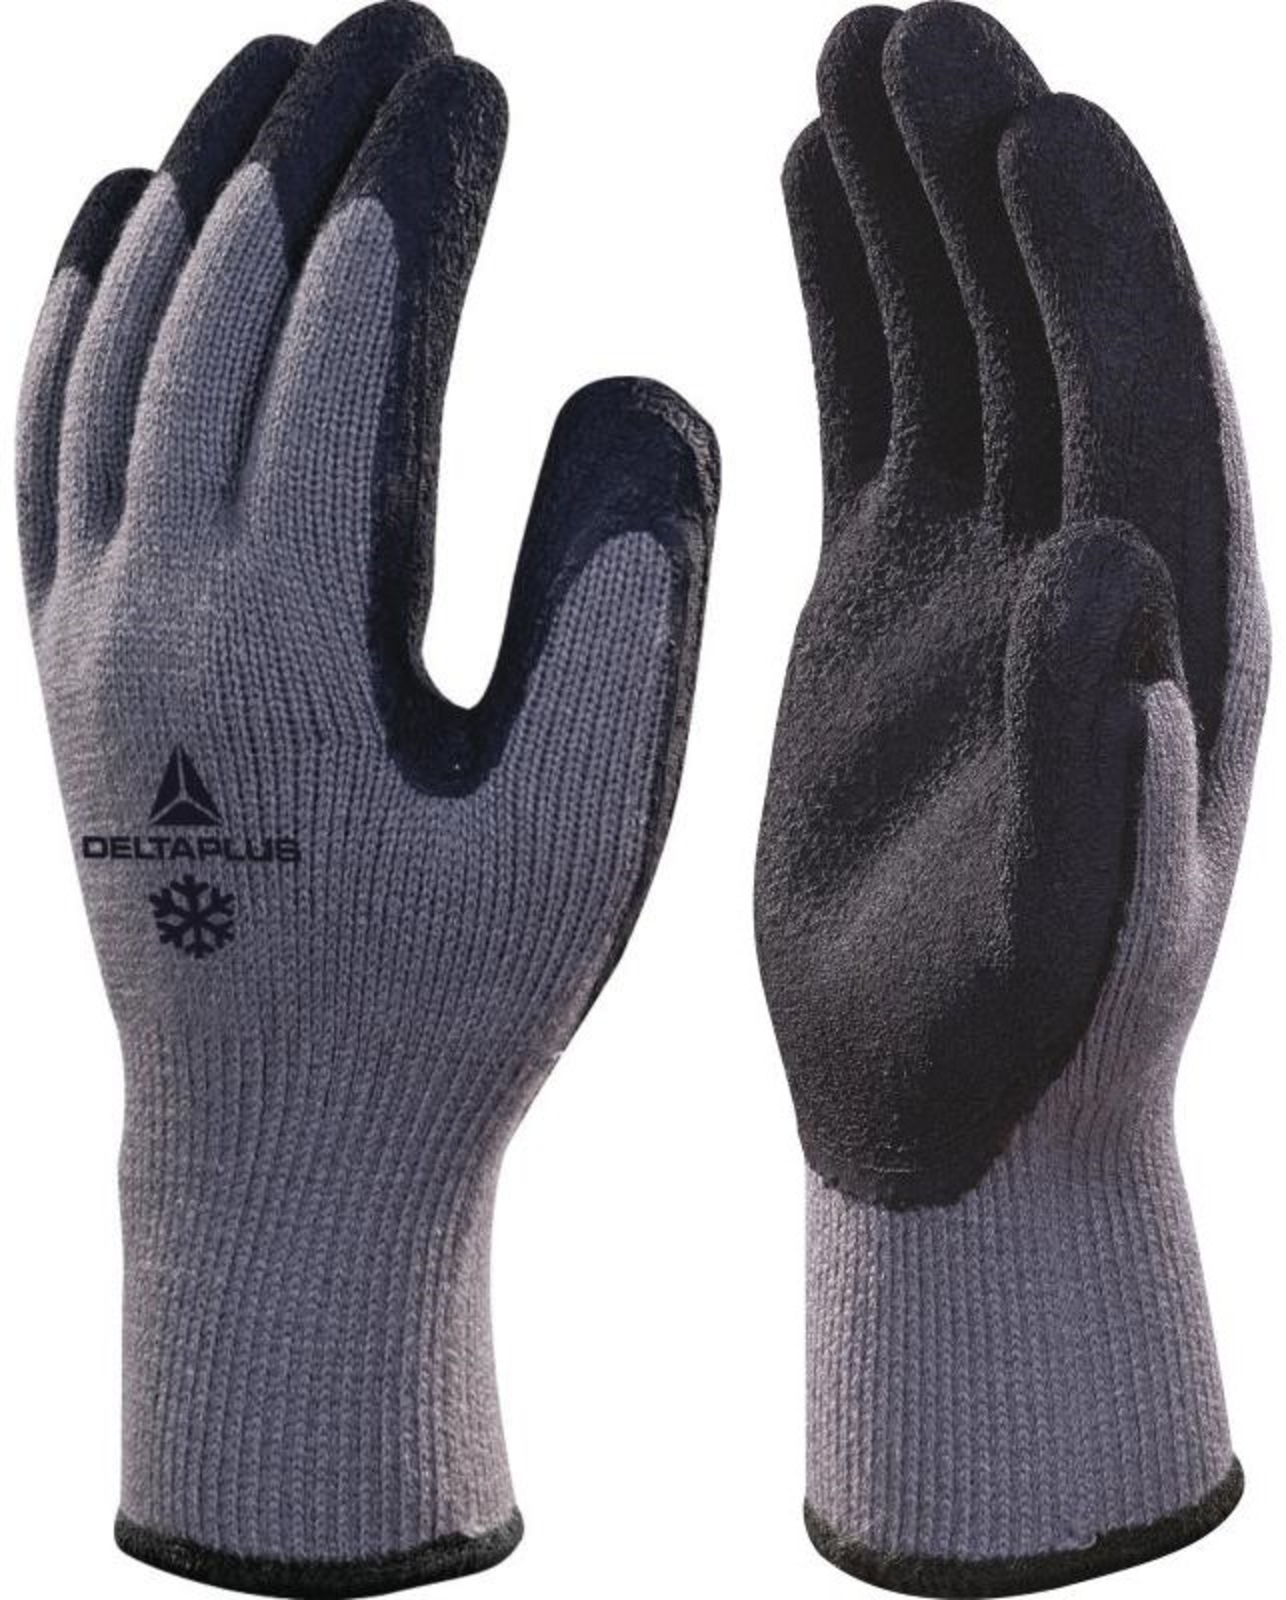 Zimné pracovné rukavice Delta Plus Apollon Winter VV735 - veľkosť: 10/XL, farba: sivá/čierna